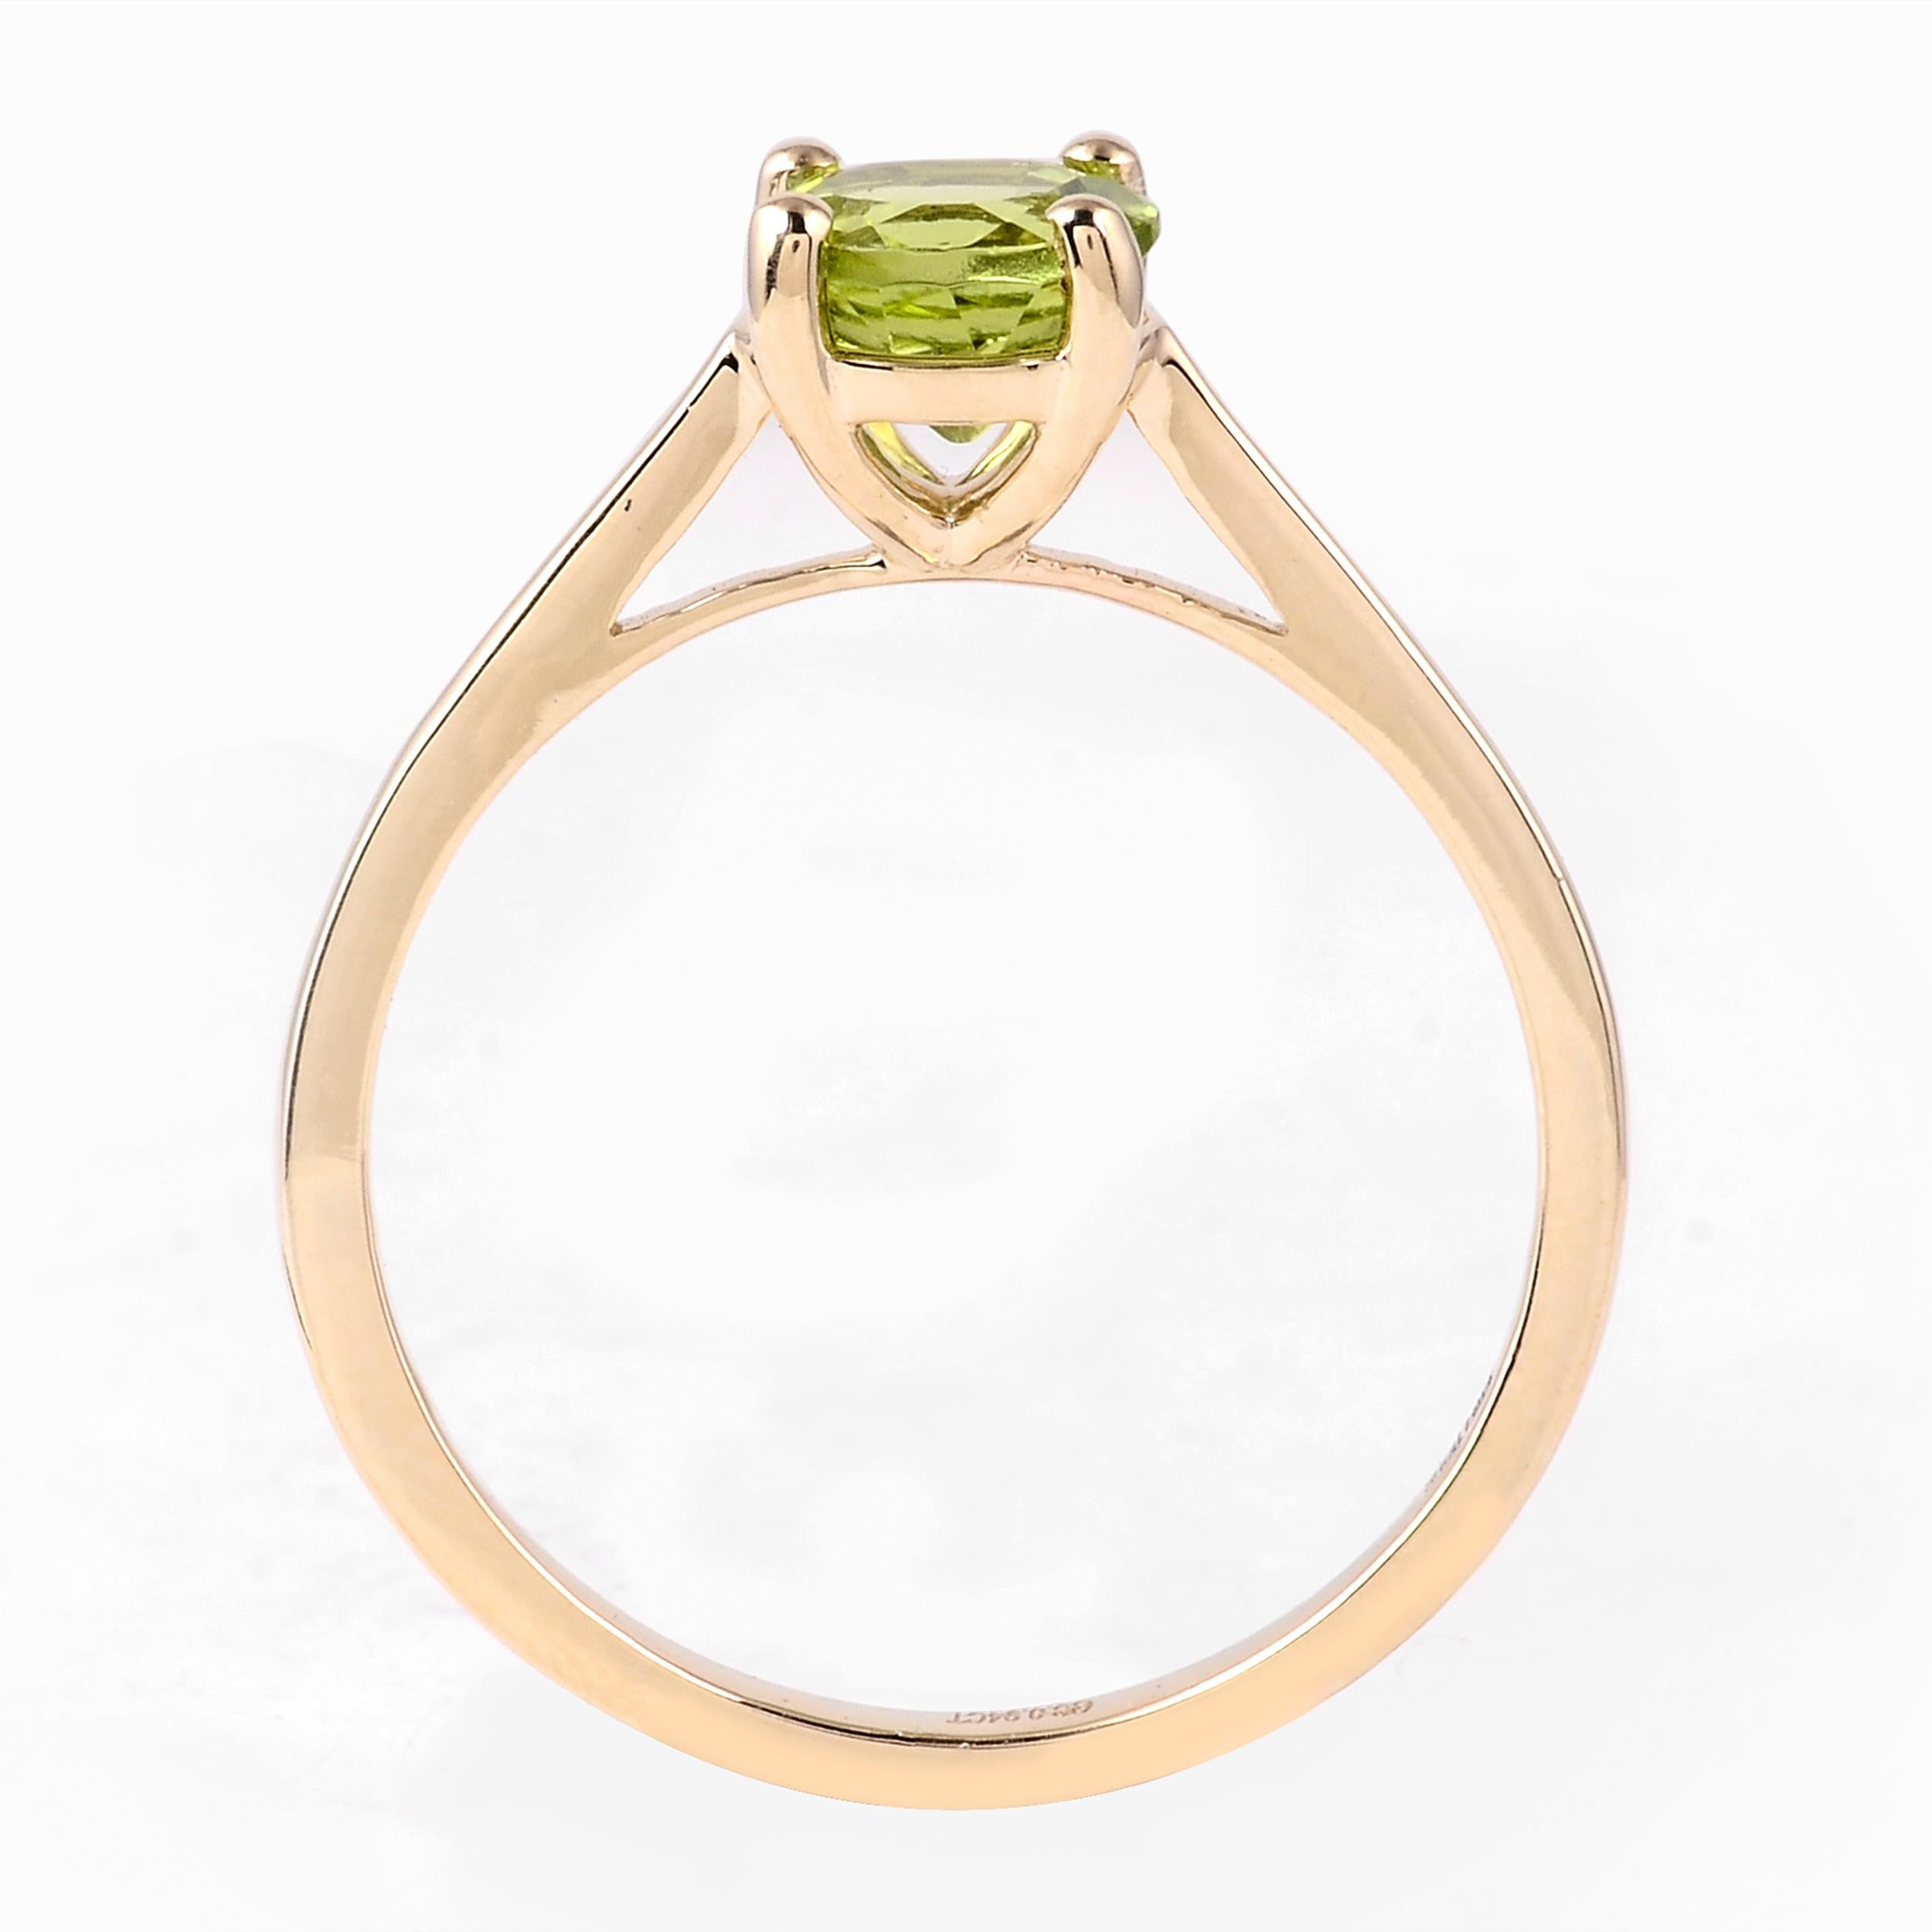 Rehaussez votre collection de bijoux avec l'allure enchanteresse de la bague Harmony in Green Peridot. En tant que marque profondément ancrée dans la célébration des merveilles de la Nature, nous présentons cette exquise bague comme une ode